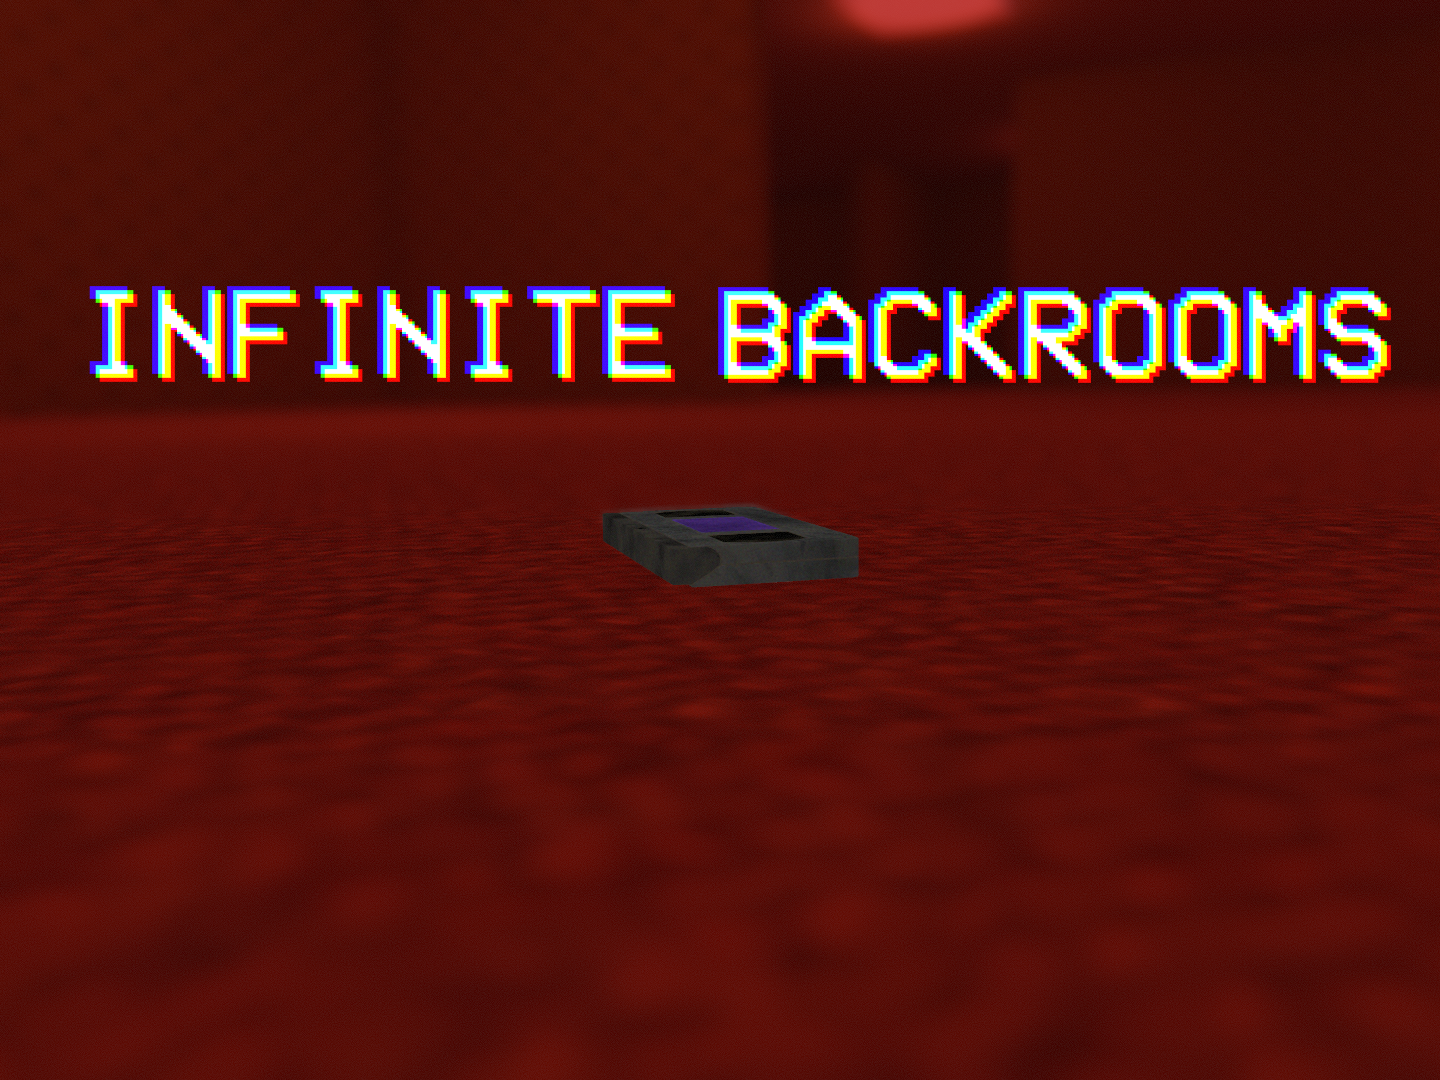 Infinite Backrooms v1․23